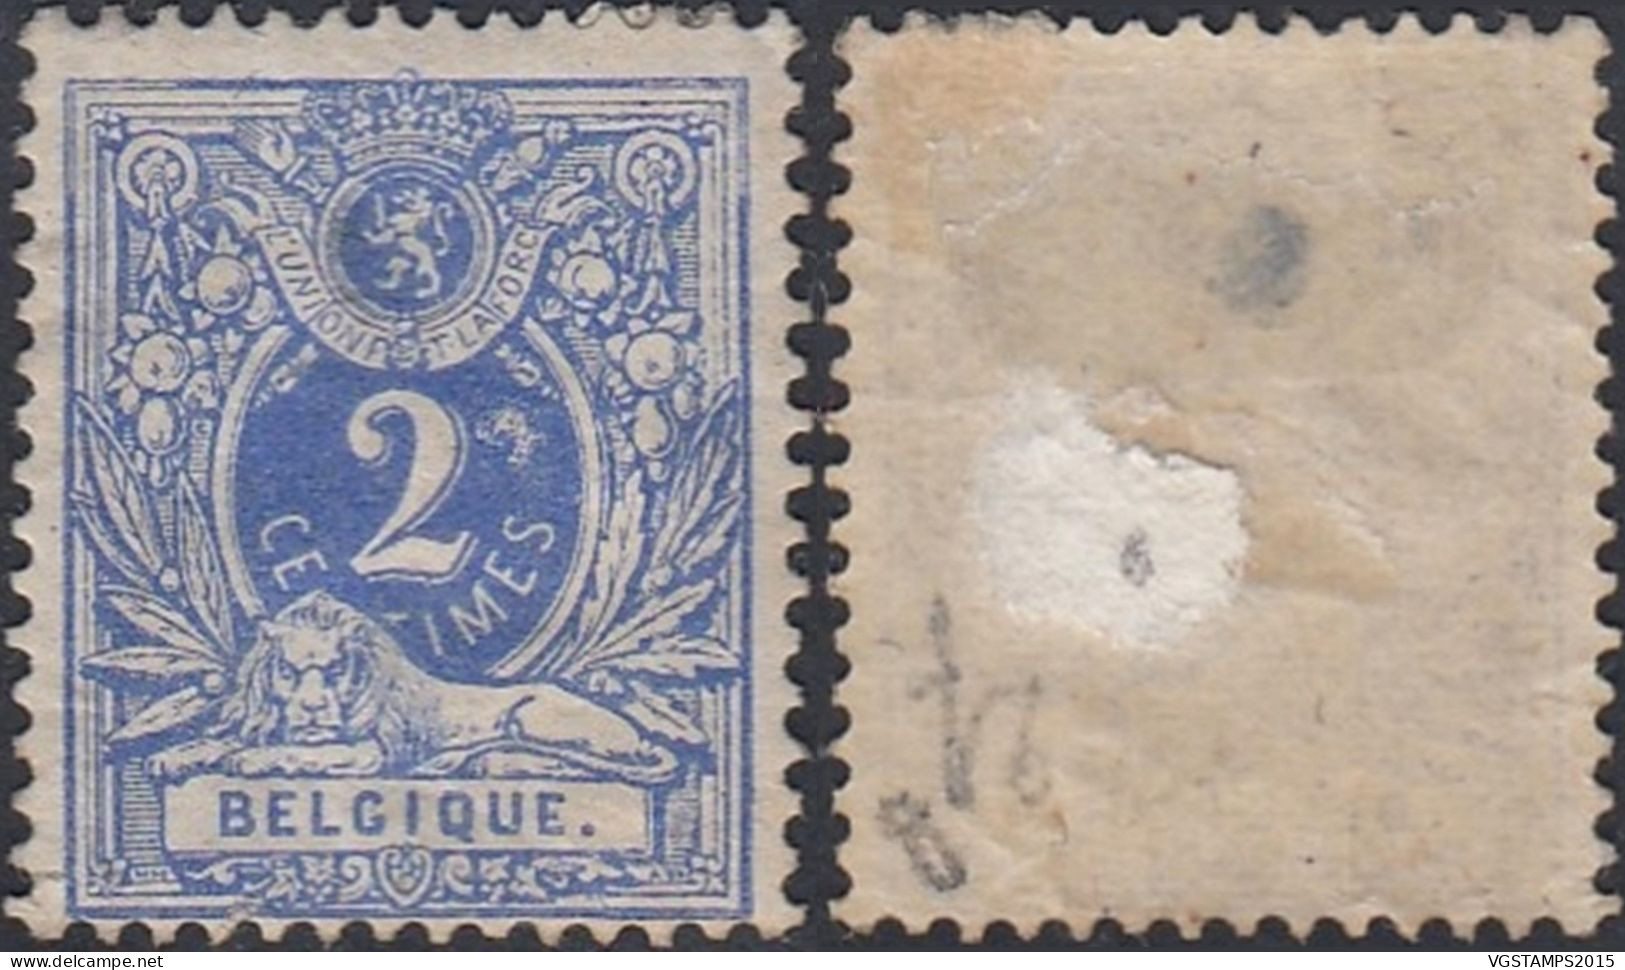 Belgique 1880 - Timbre Neuf Avec Charnière. COB Nr.: 27 B.Curiosité: Tâche Derrière Le "2". Avec Défaut . (EB) DC-12549 - 1869-1888 Liggende Leeuw